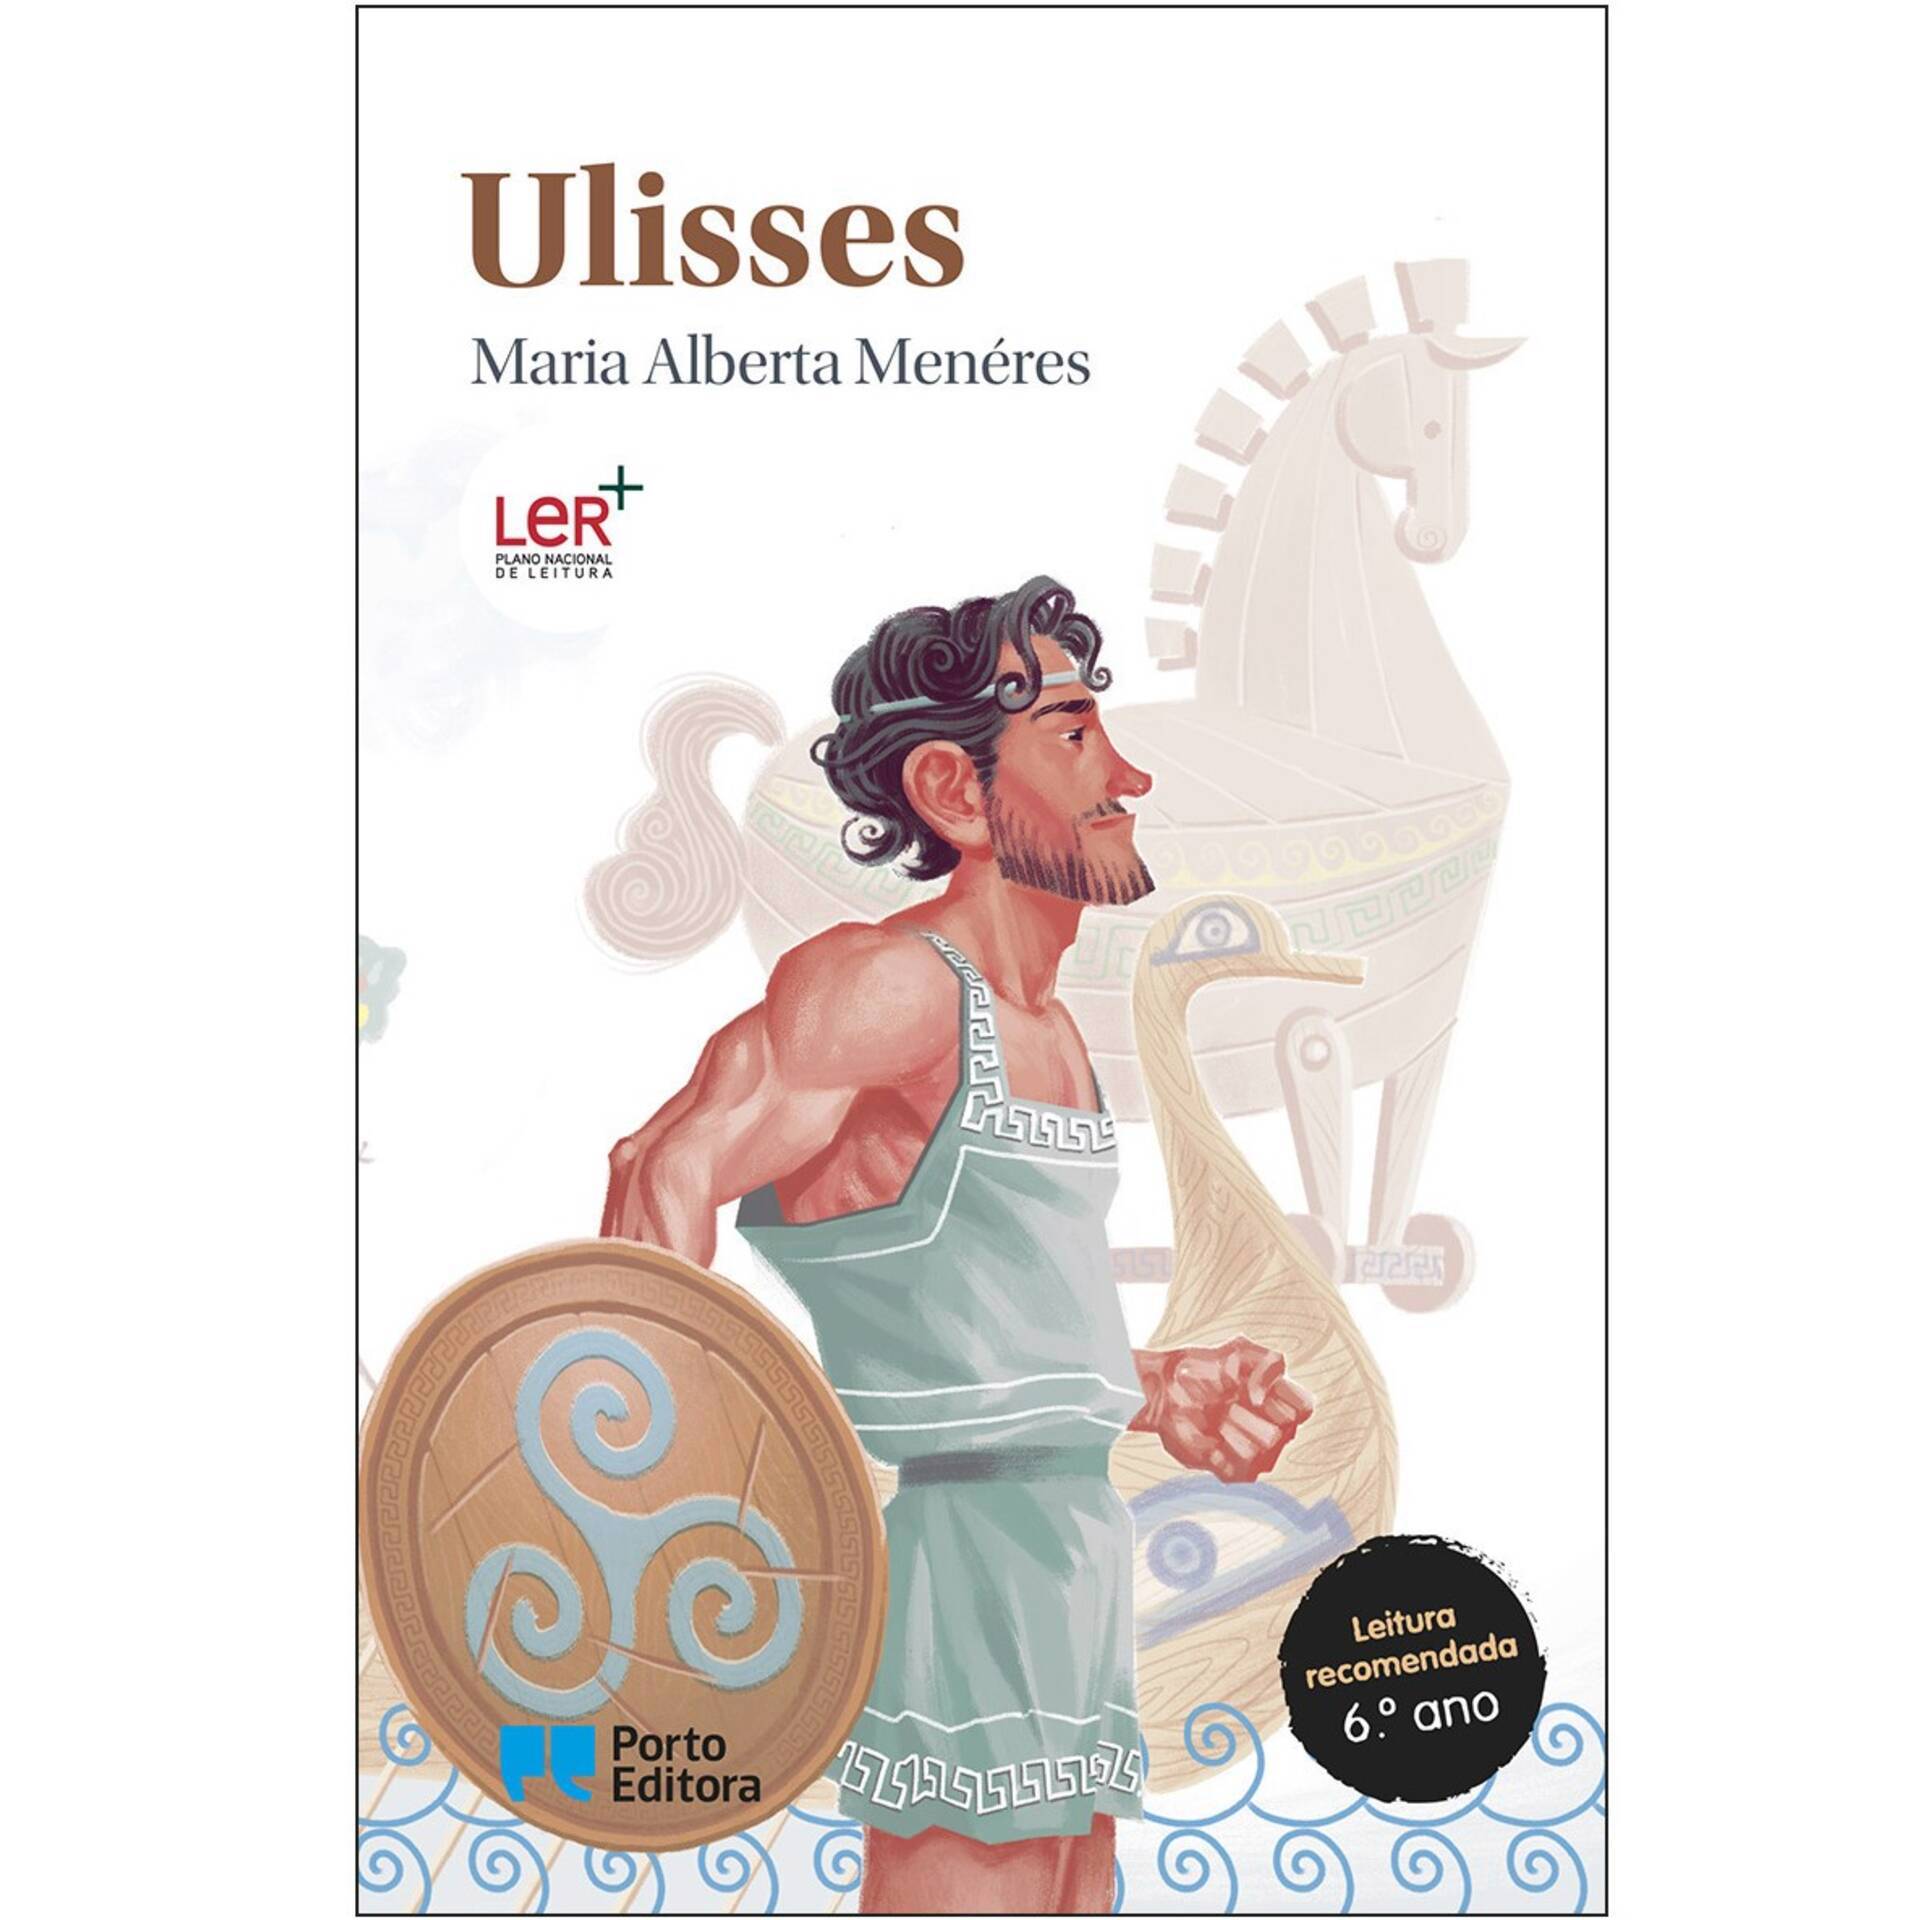 Ulisses desenhos - Desenhar e vida, aprenda o método no curso e